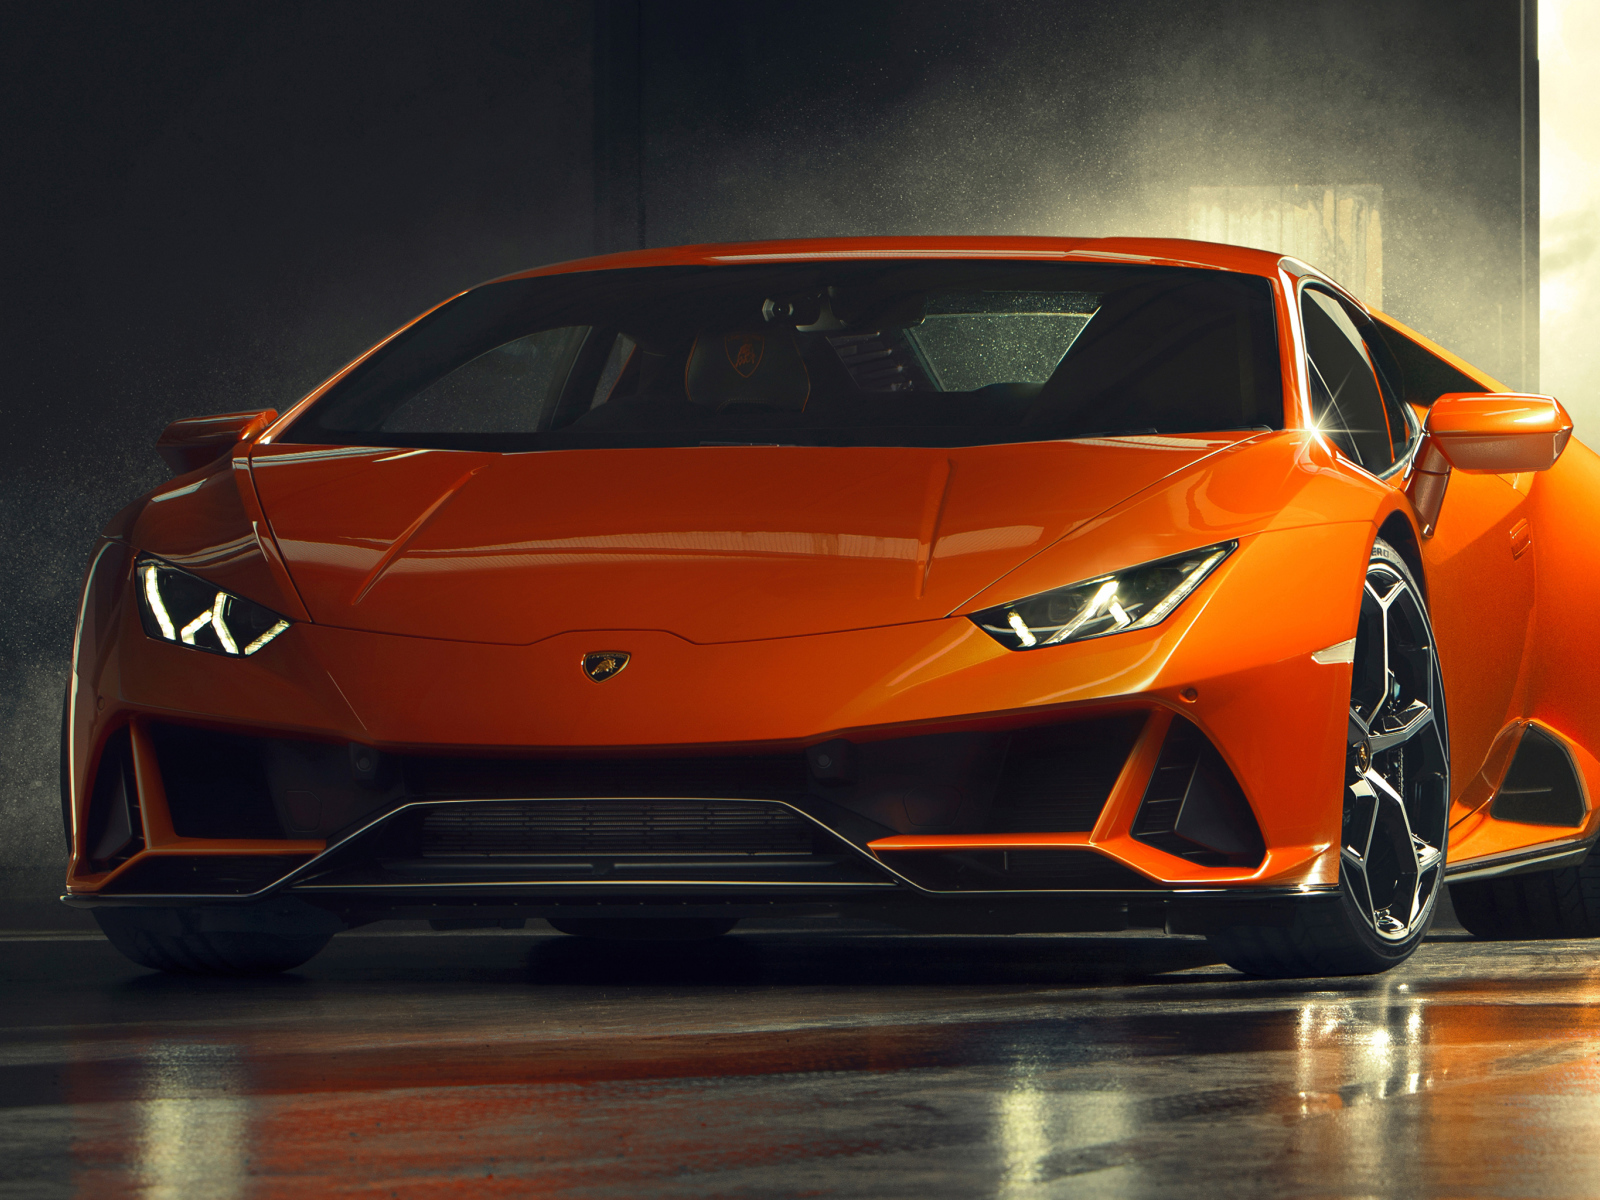 Orange sporty Lamborghini Huracan EVO, 2019 in the garage